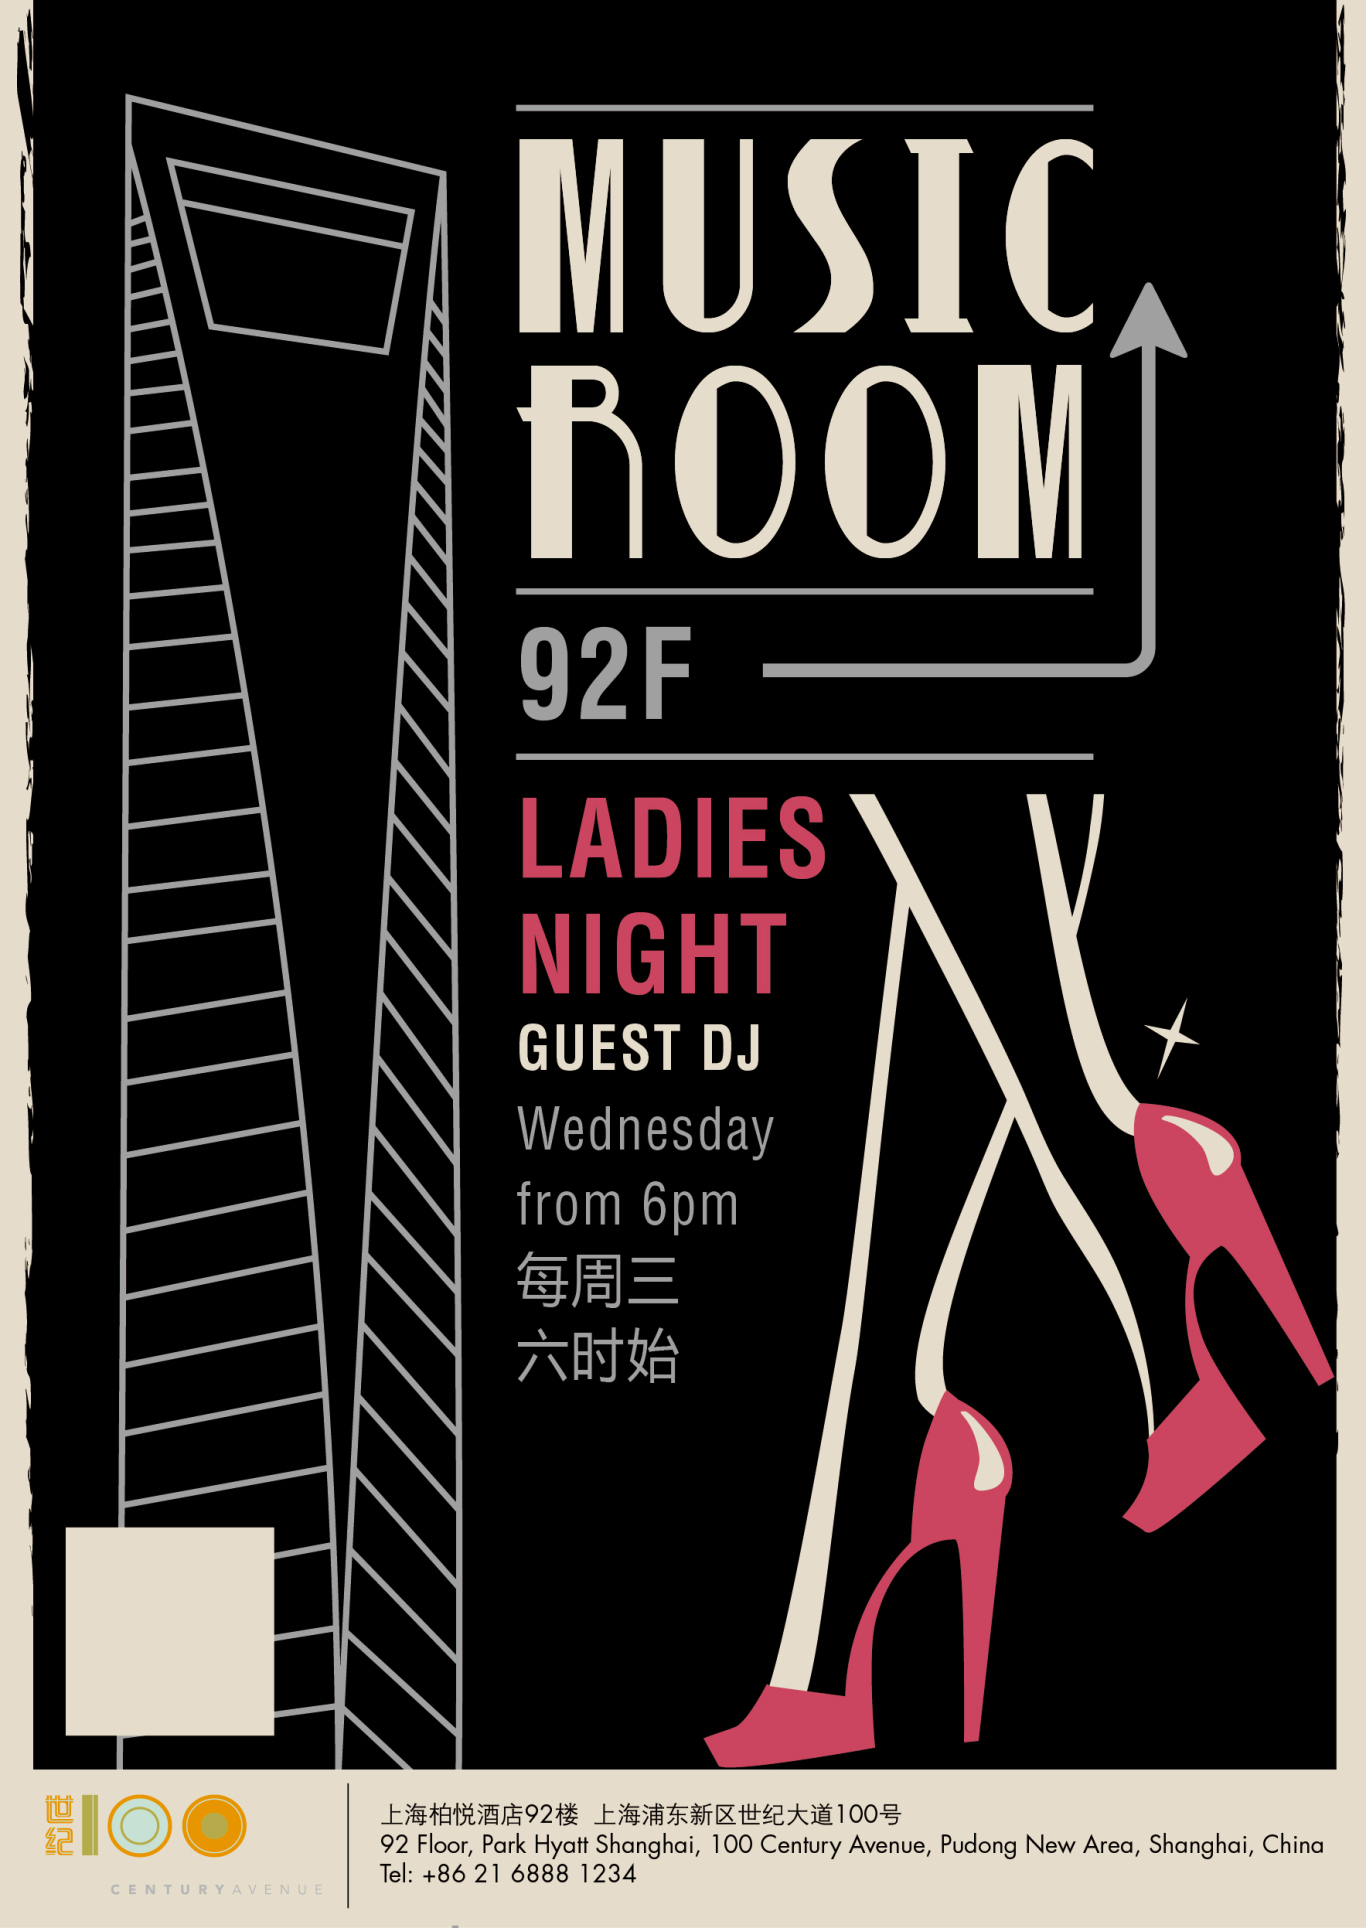 上海柏悦酒店92F bar海报设计图3